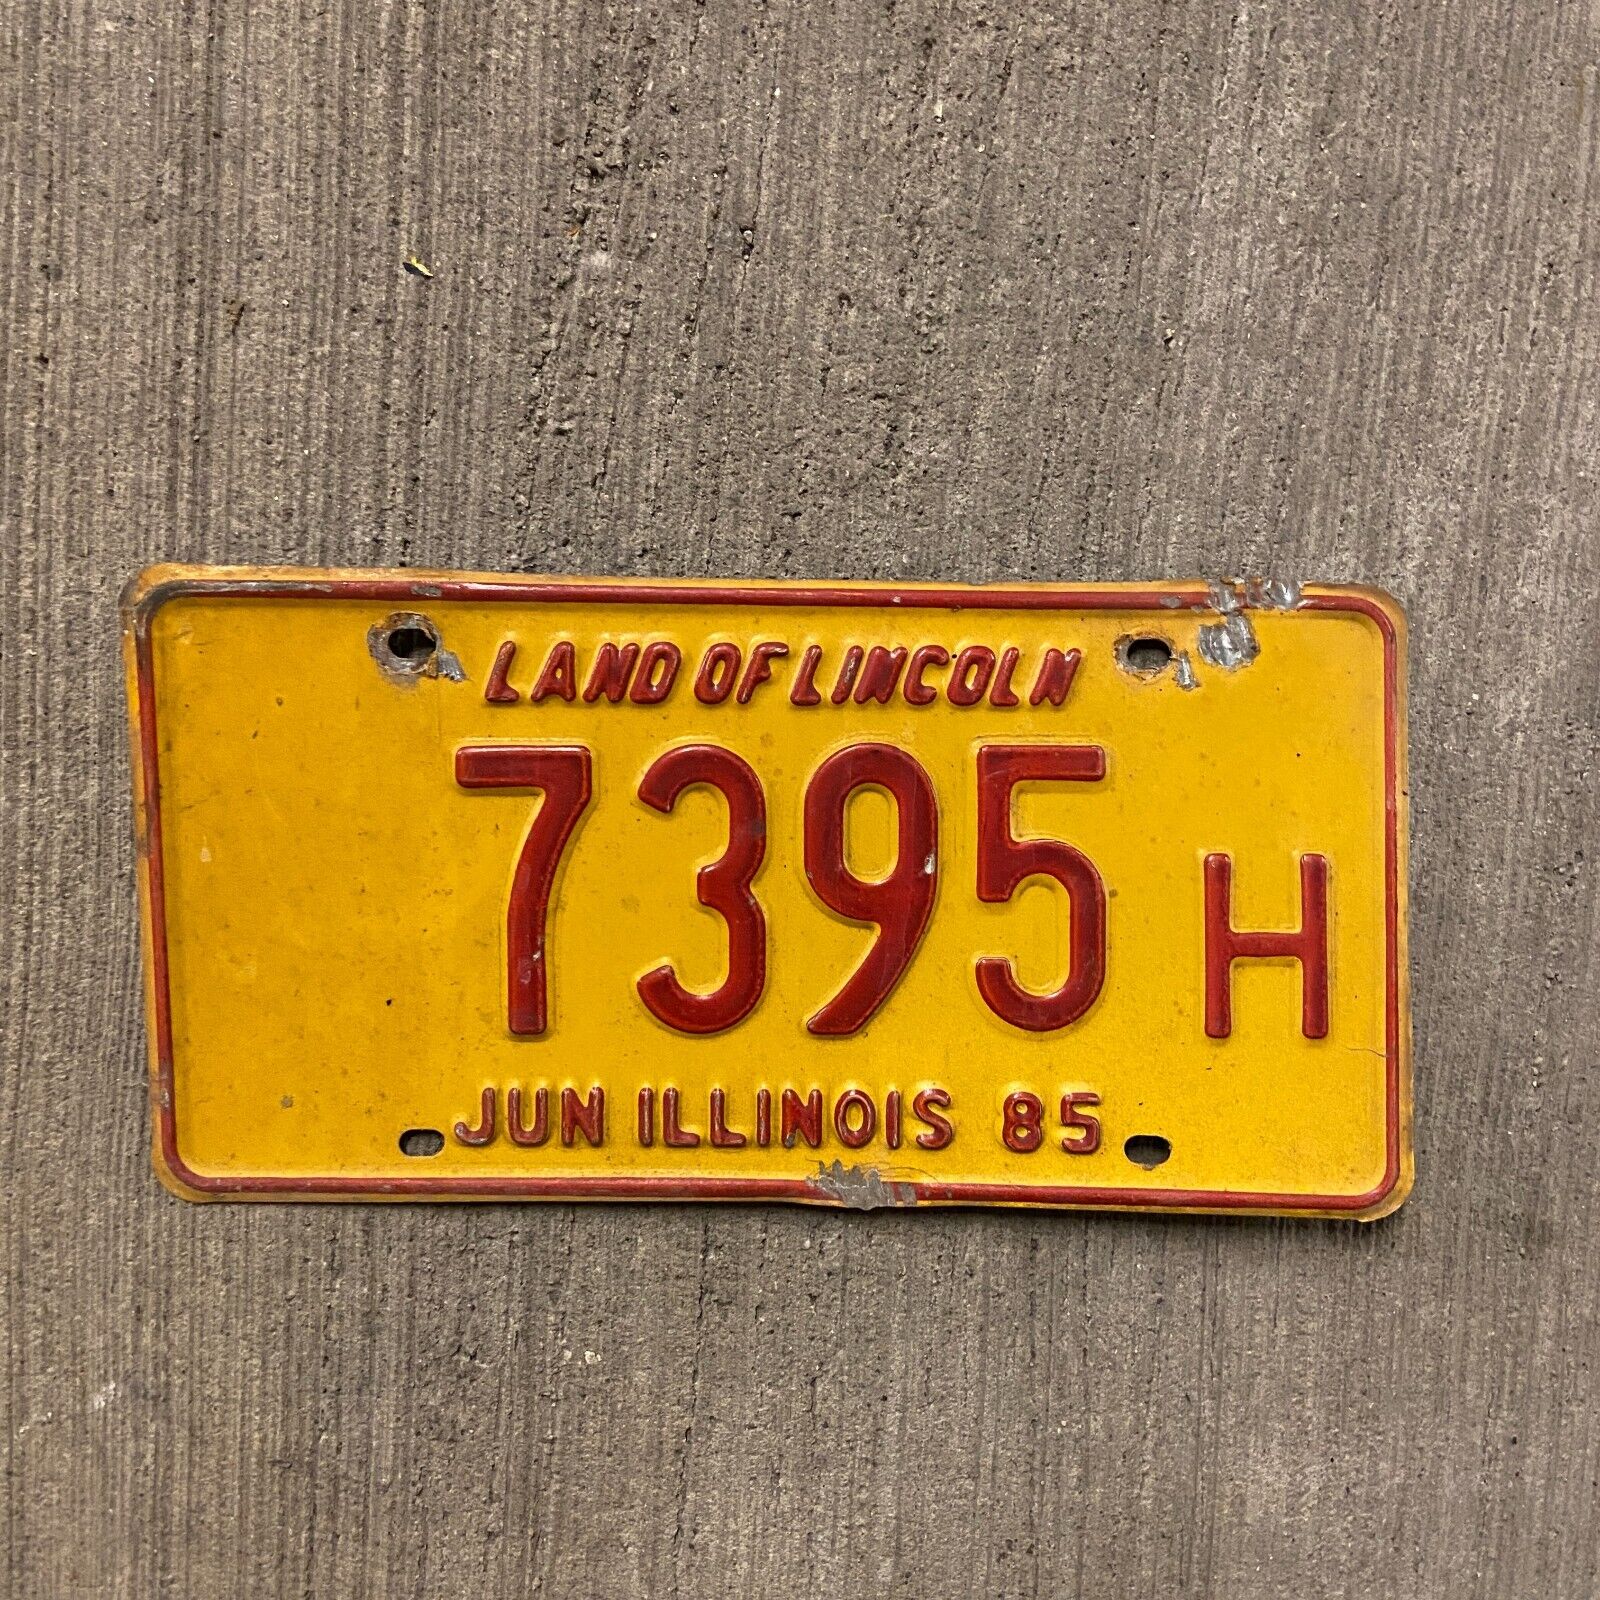 1985 Illinois Truck License Plate Garage Auto Decor Four Digit Car Show 7395 H